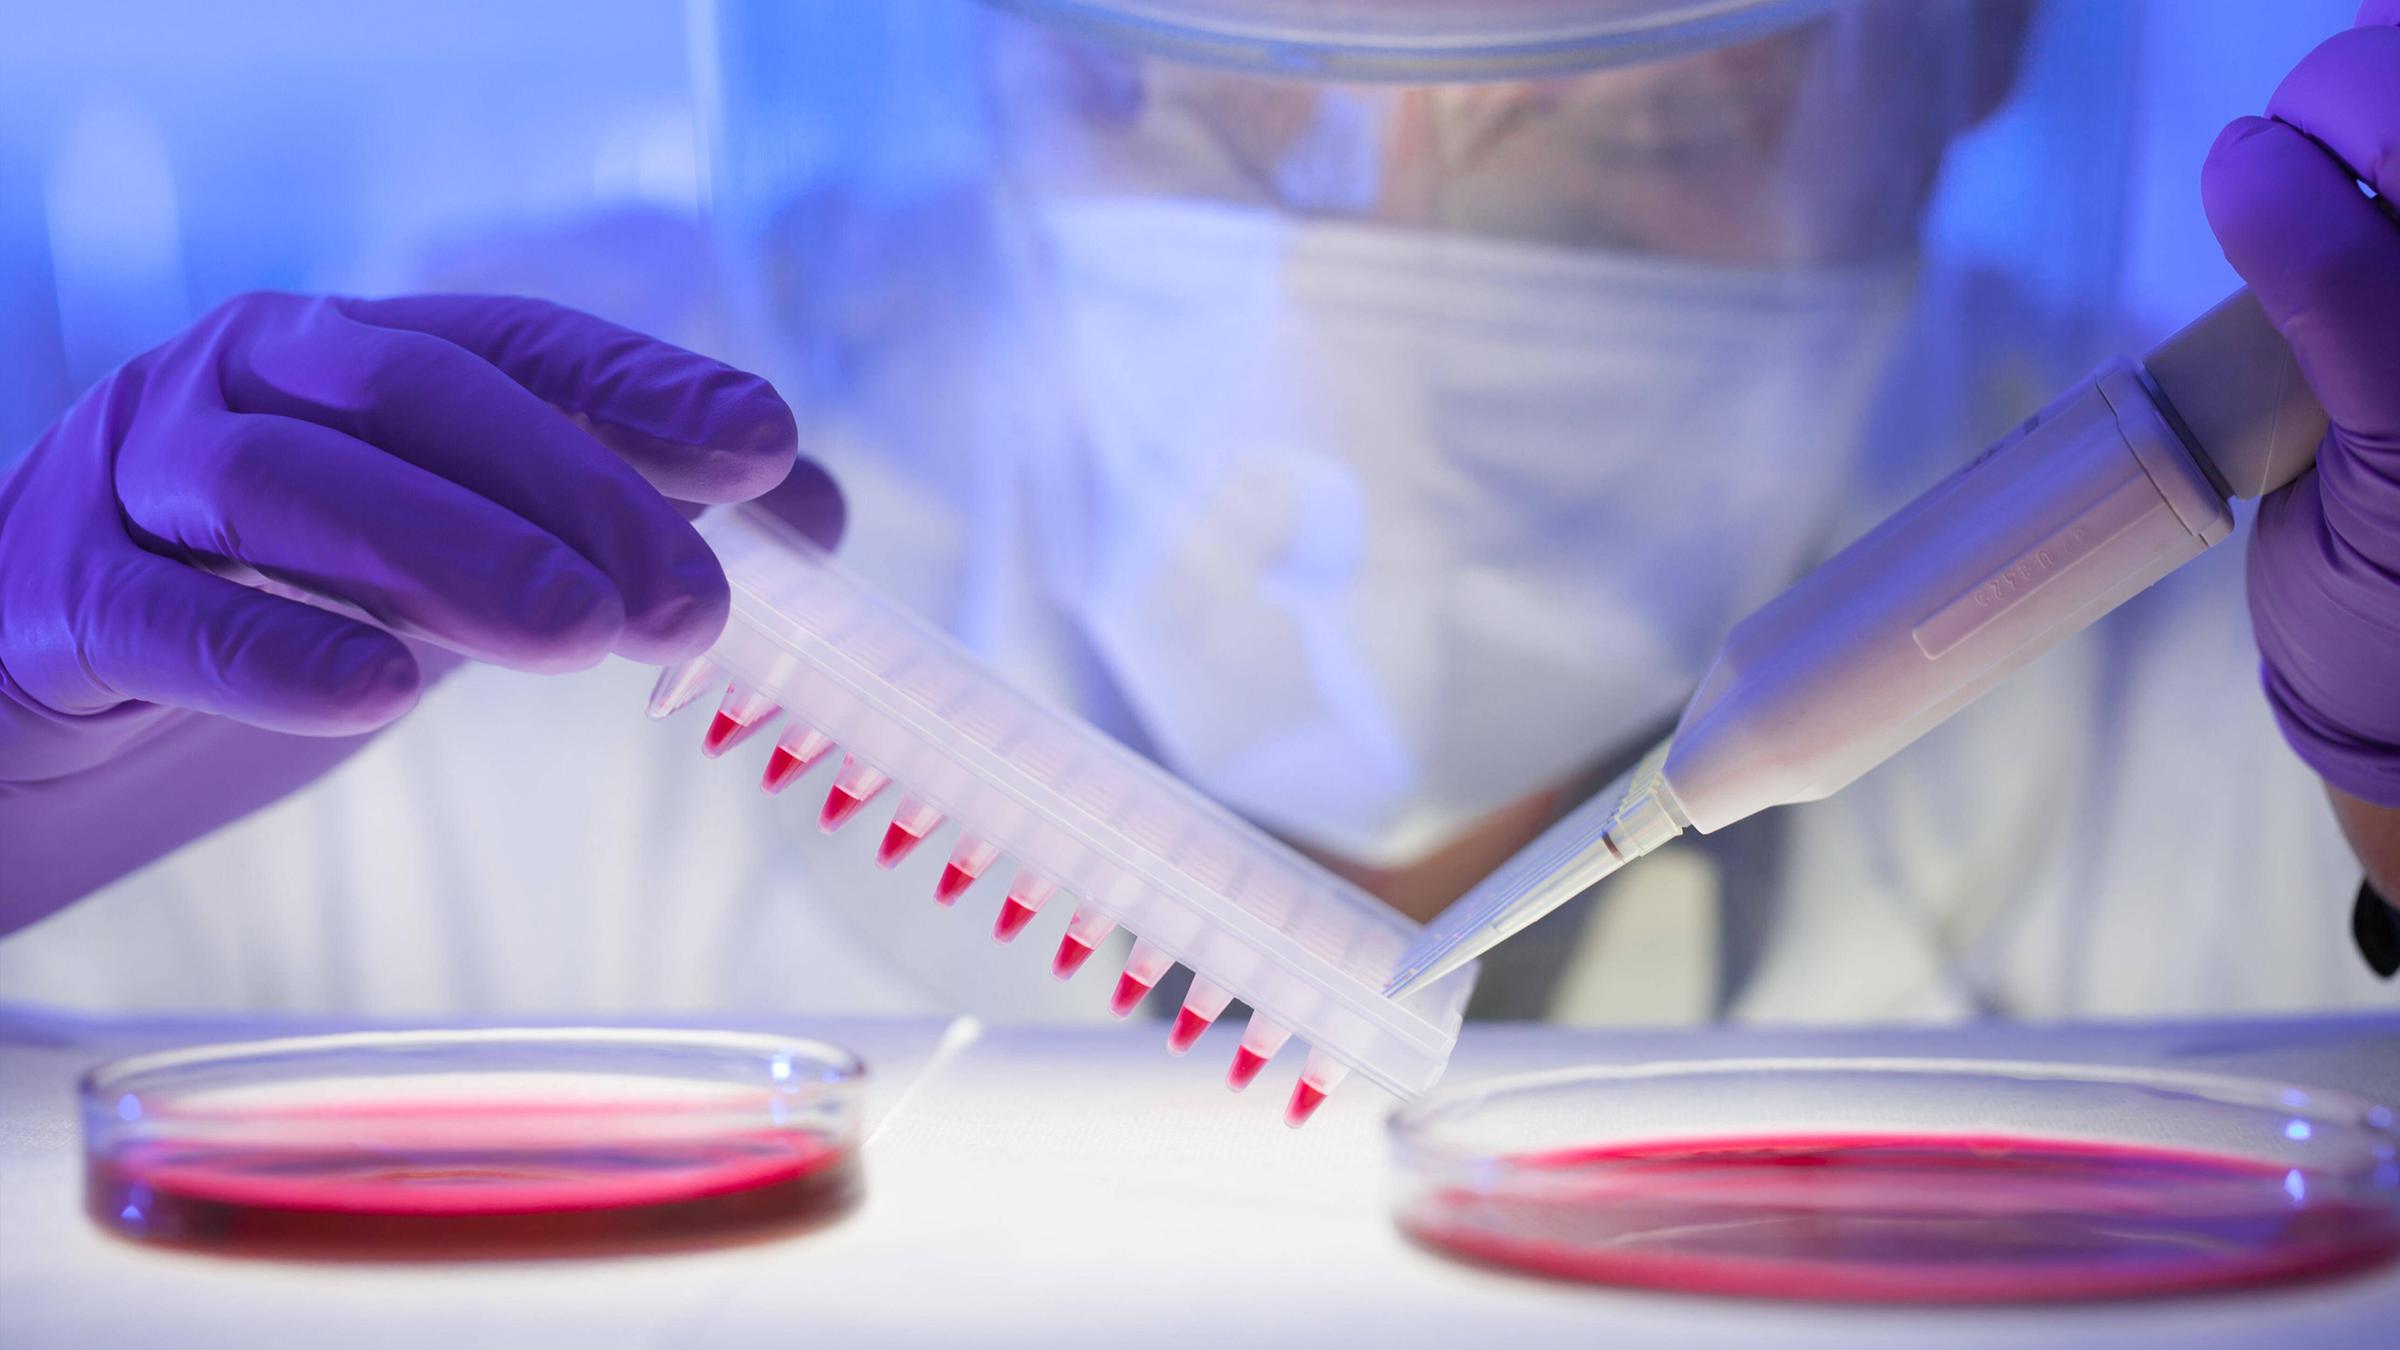 Humanserummedien mit HIV-infizierten Zellen werden von der Petrischale auf eine Mikrotiterplatte pipettiert. 